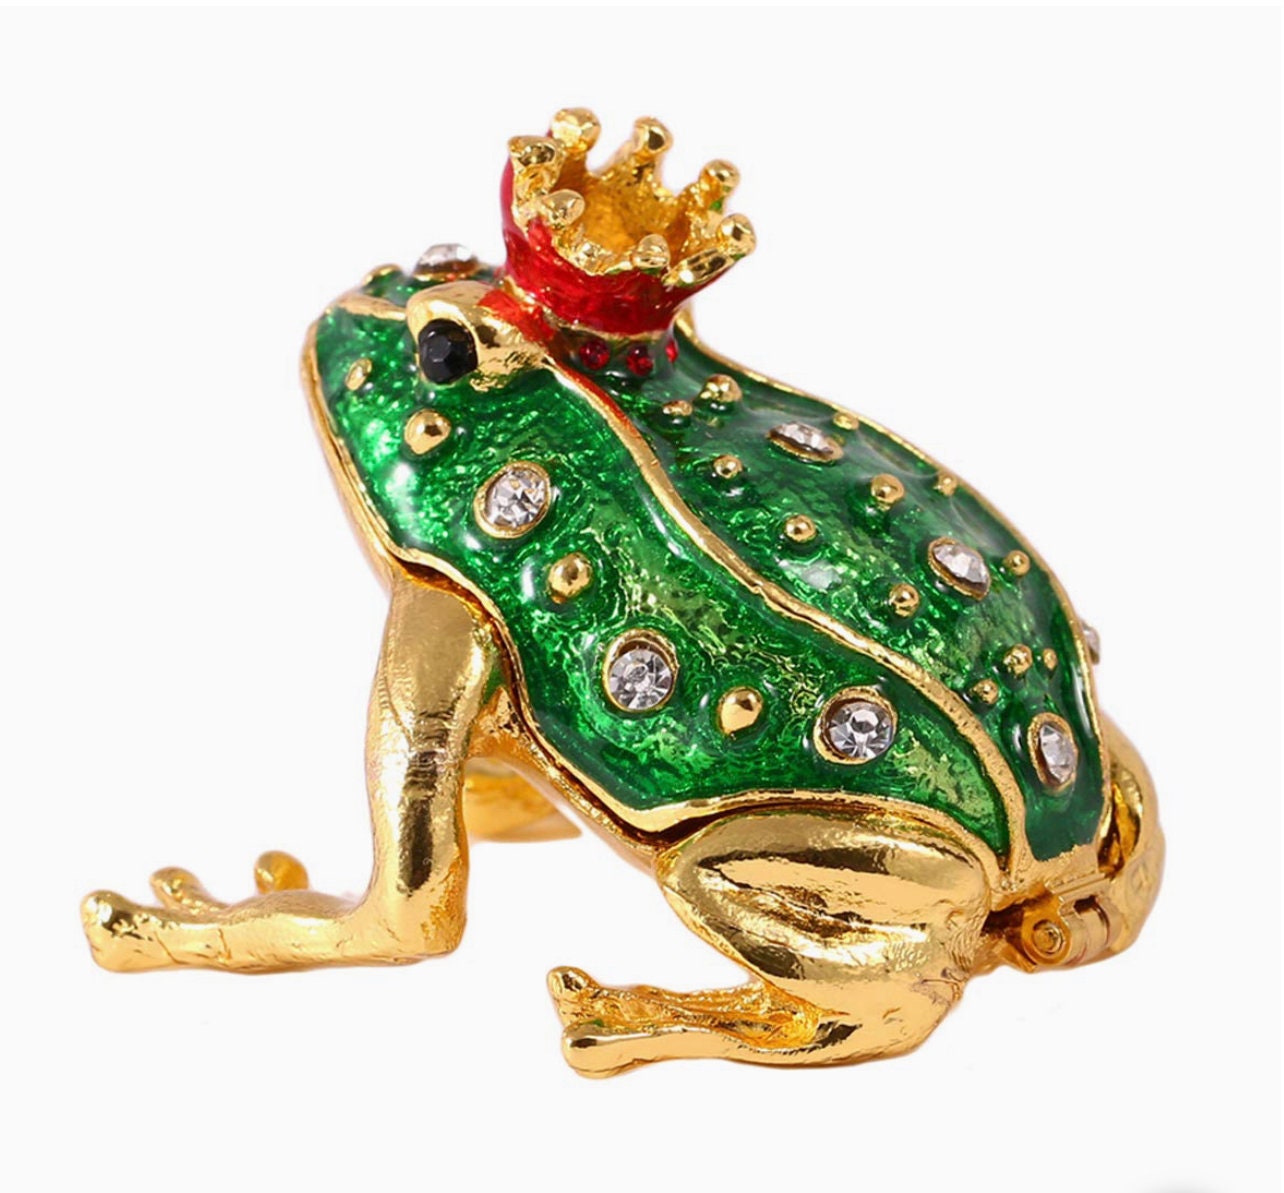 Frog Trinket Box, Frog Figurine, Frog jewelry box, Frog gifts